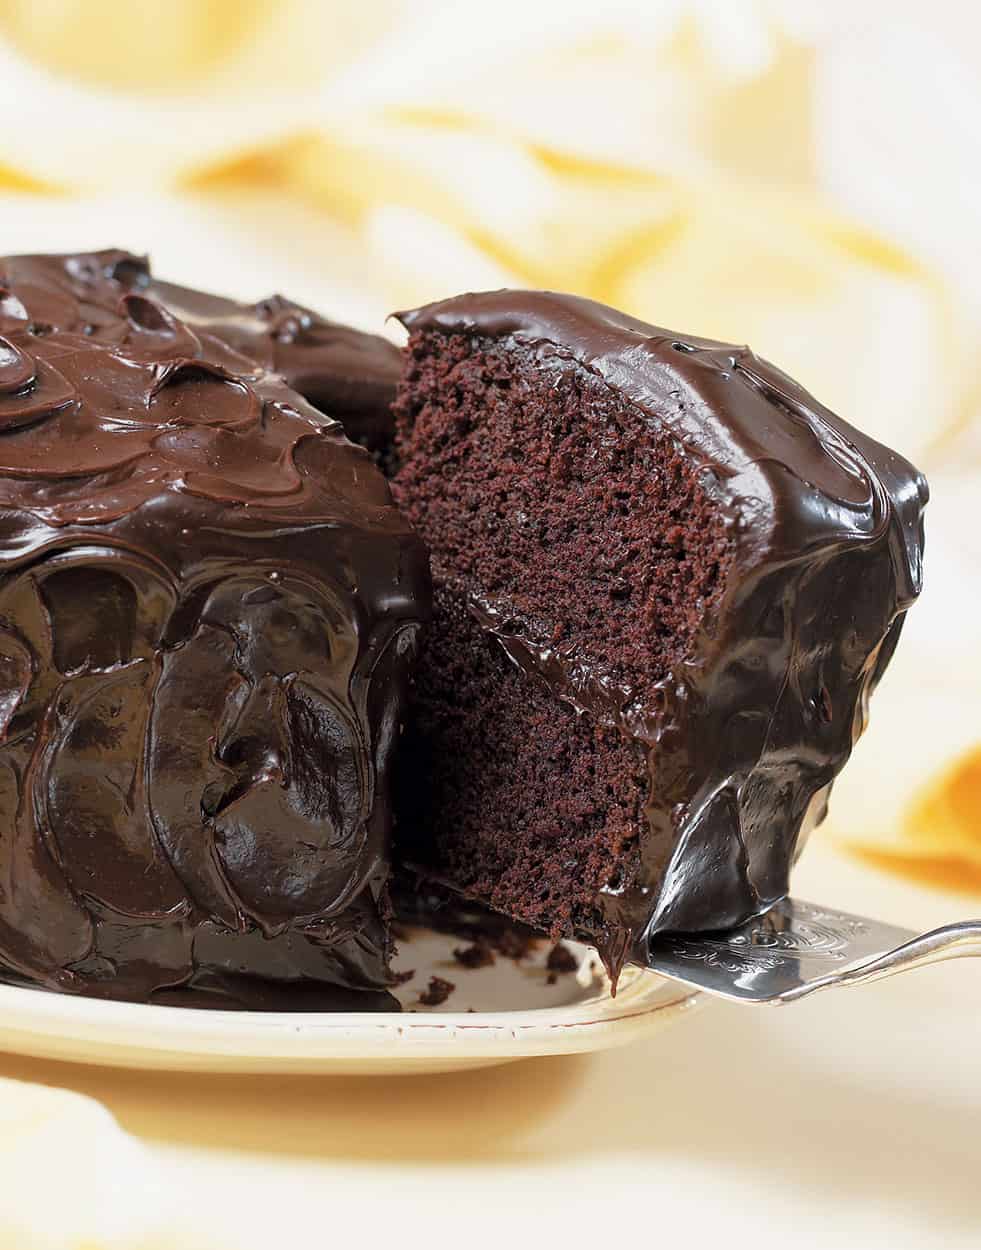 10 Best Chocolate Cakes you can find in Cebu | Sugbo.ph - Cebu